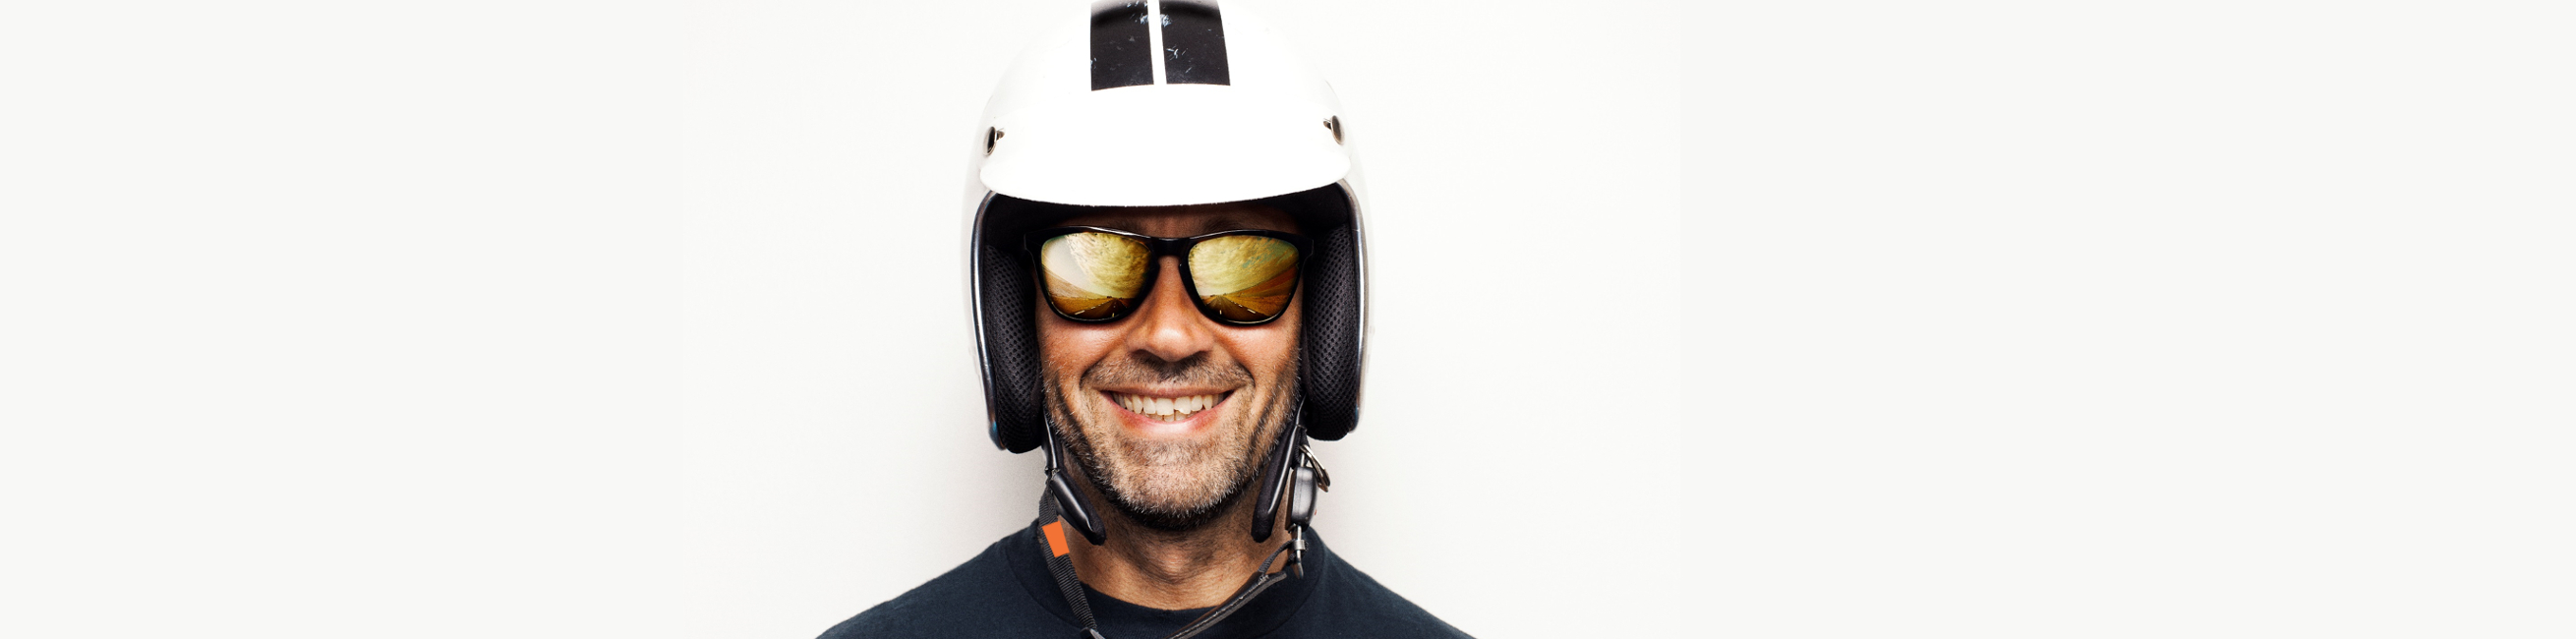 SOS-ID-Chip on motorcycle helmet